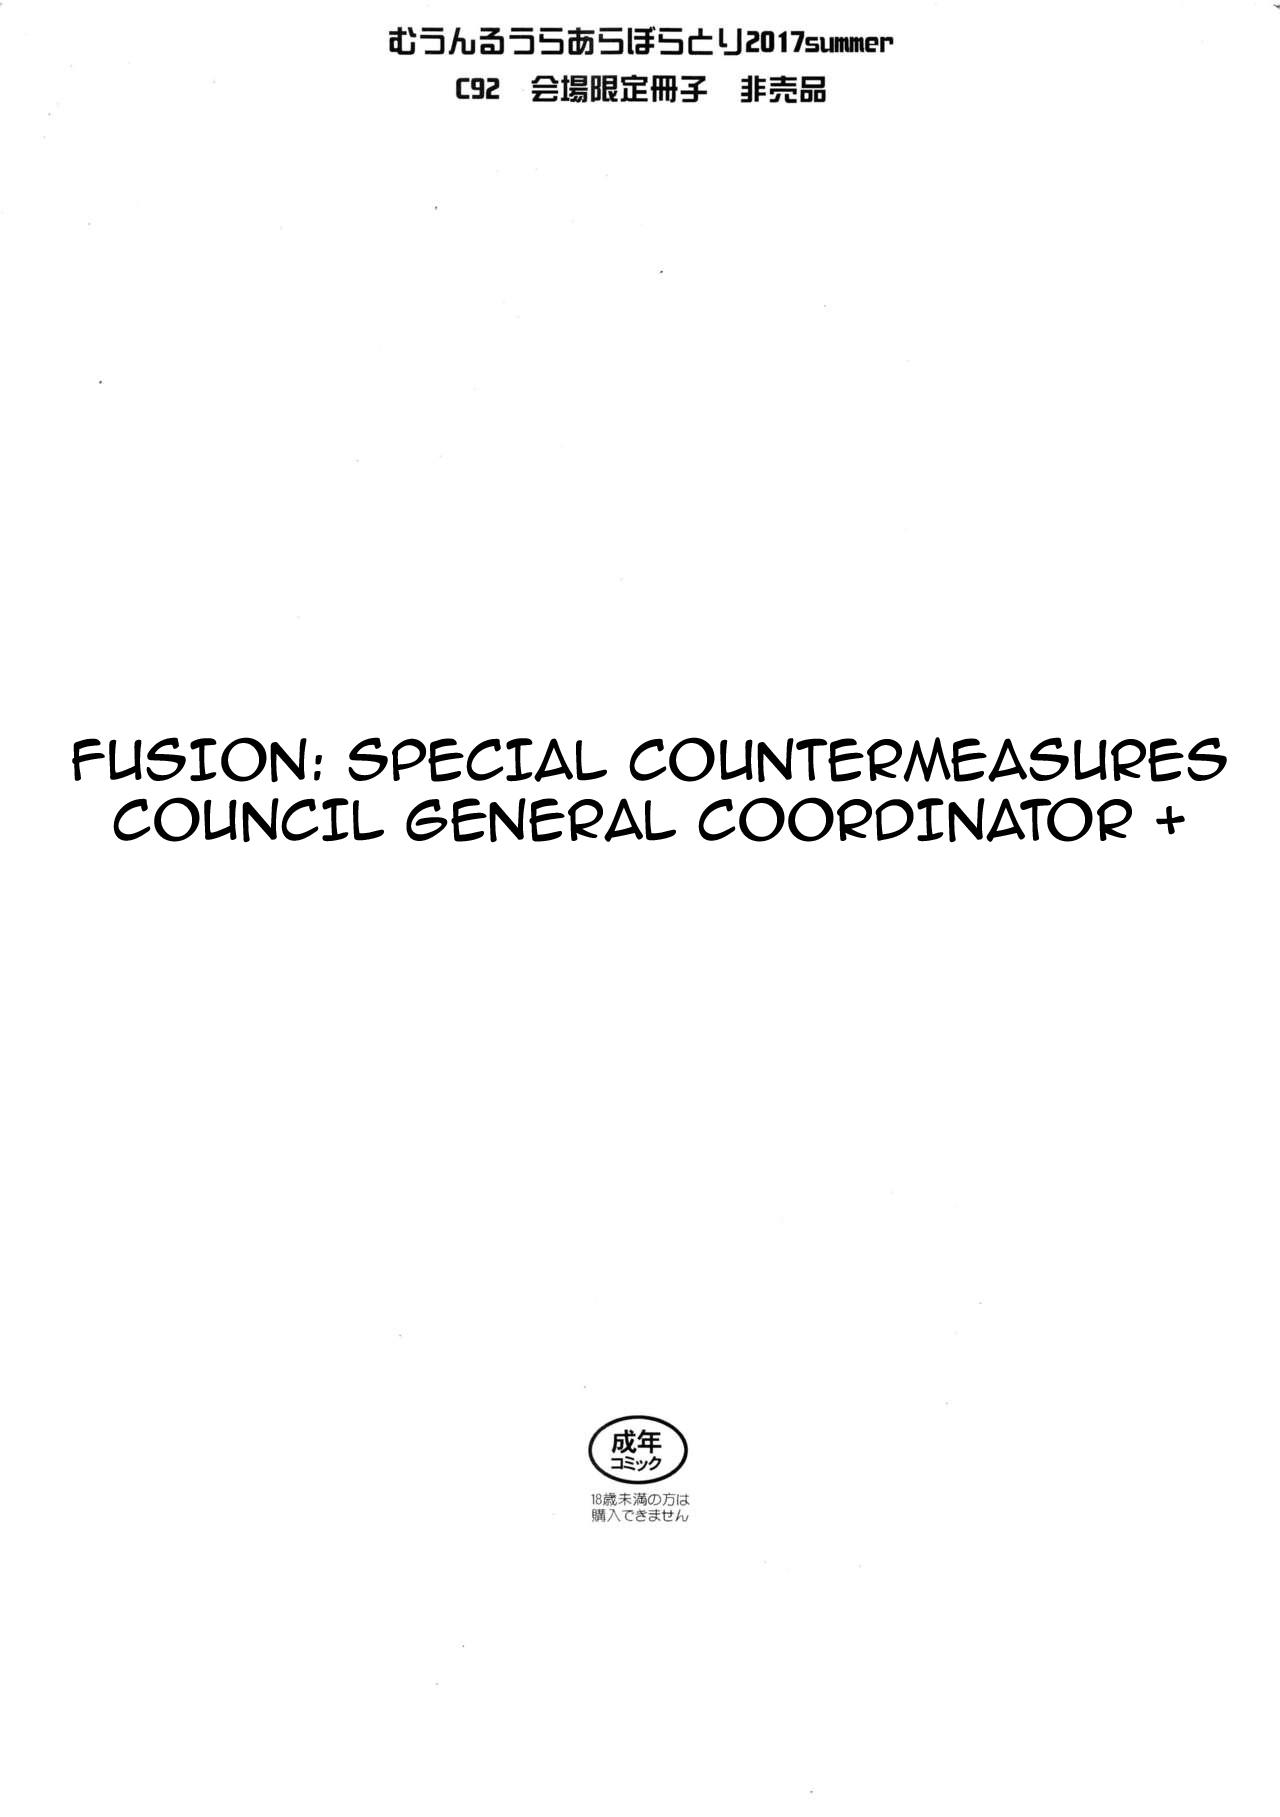 Yuukai: Tokubetsu Jitai Taisaku Kaigi Toukatsu Chouseikan + | Fusion Special Countermeasures Council General Coordinator + 1